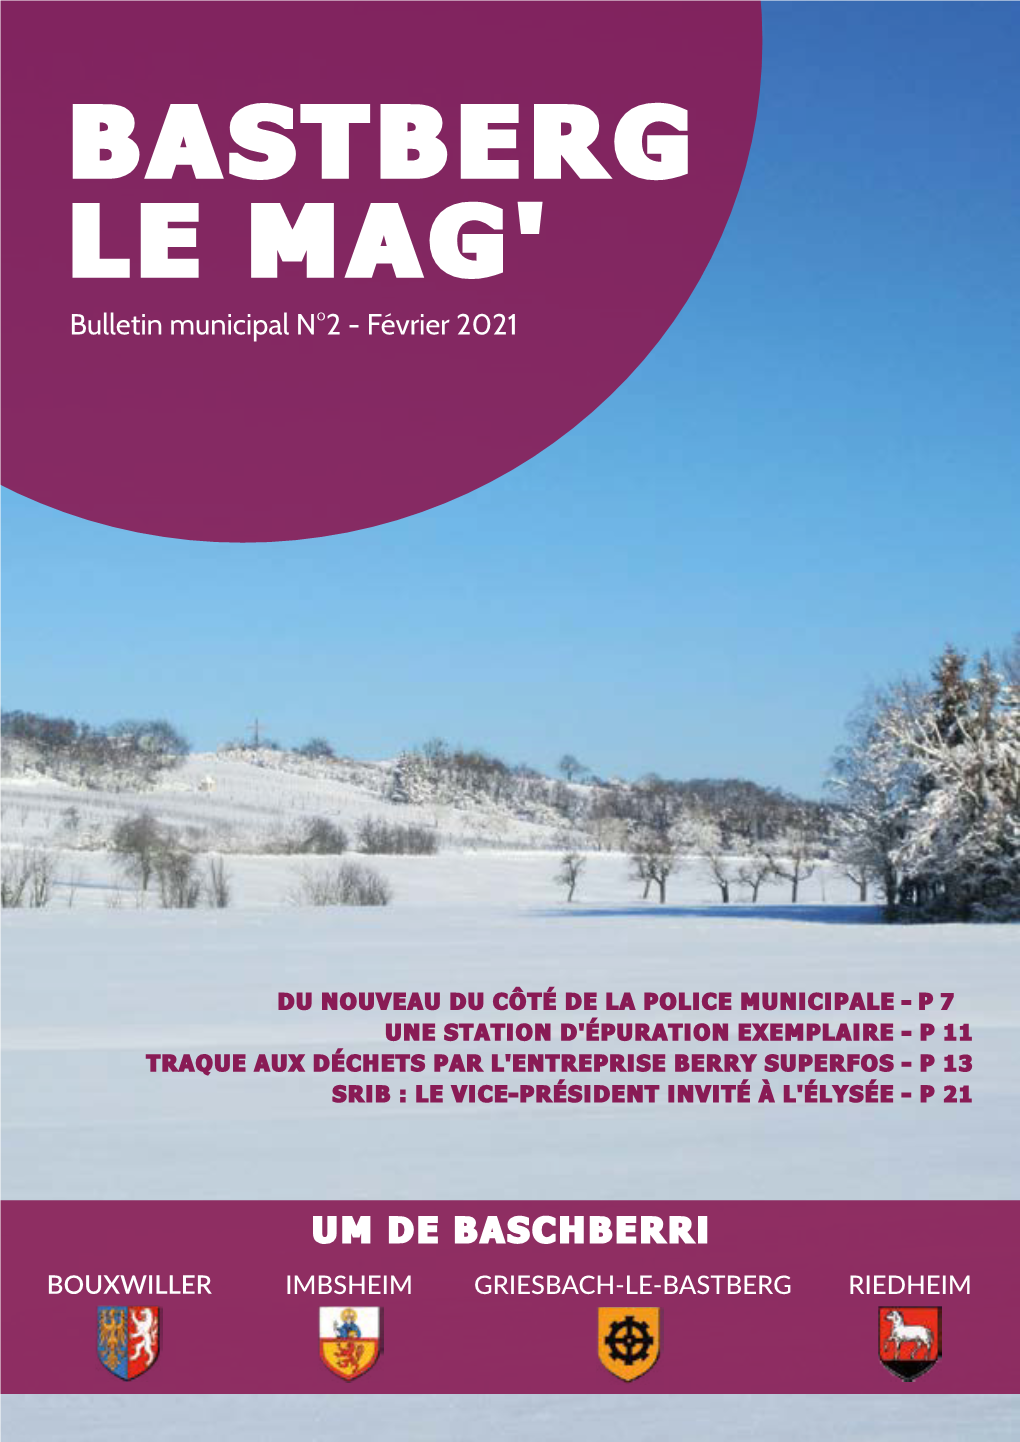 BASTBERG LE MAG' Bulletin Municipal N°2 - Février 2021